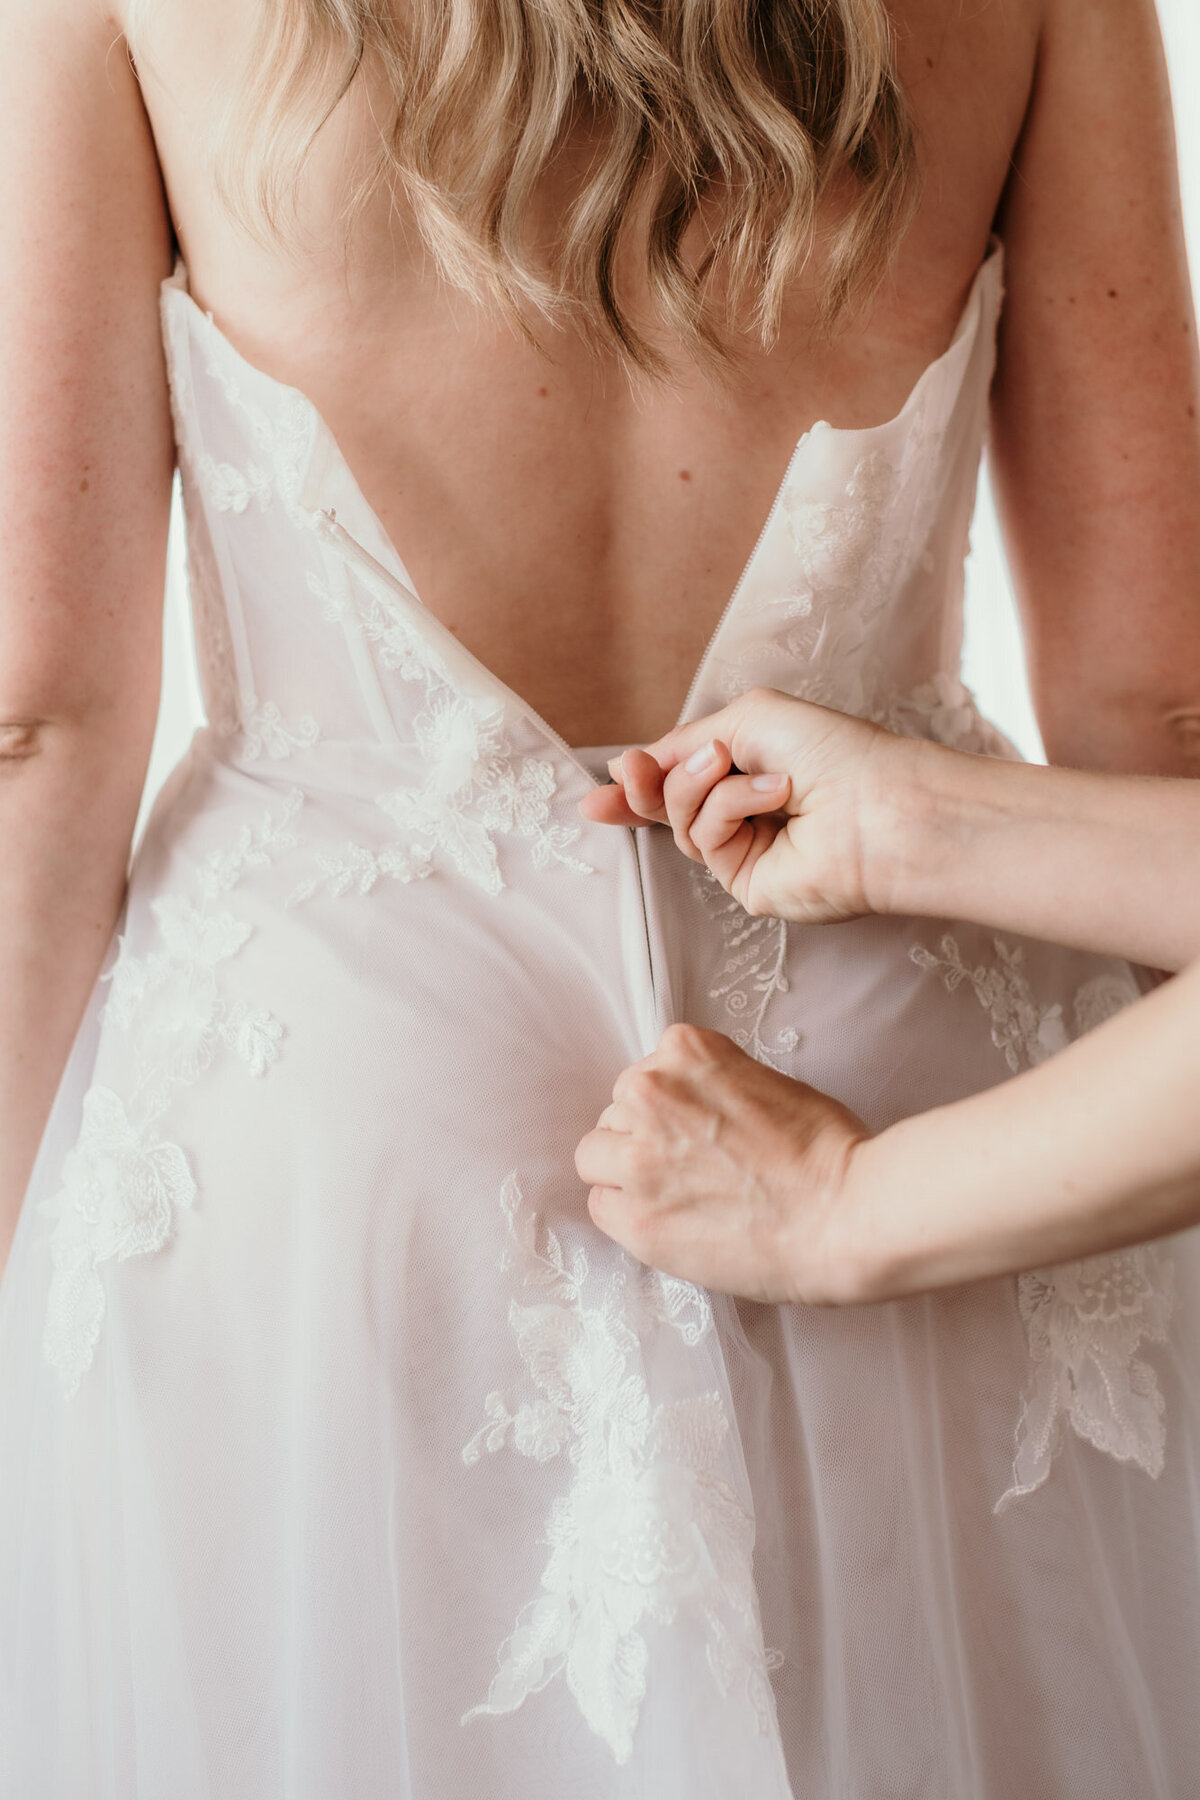 Zwei Hände schließen den Reisverschluss des Brautkleids am Rücken der Braut.